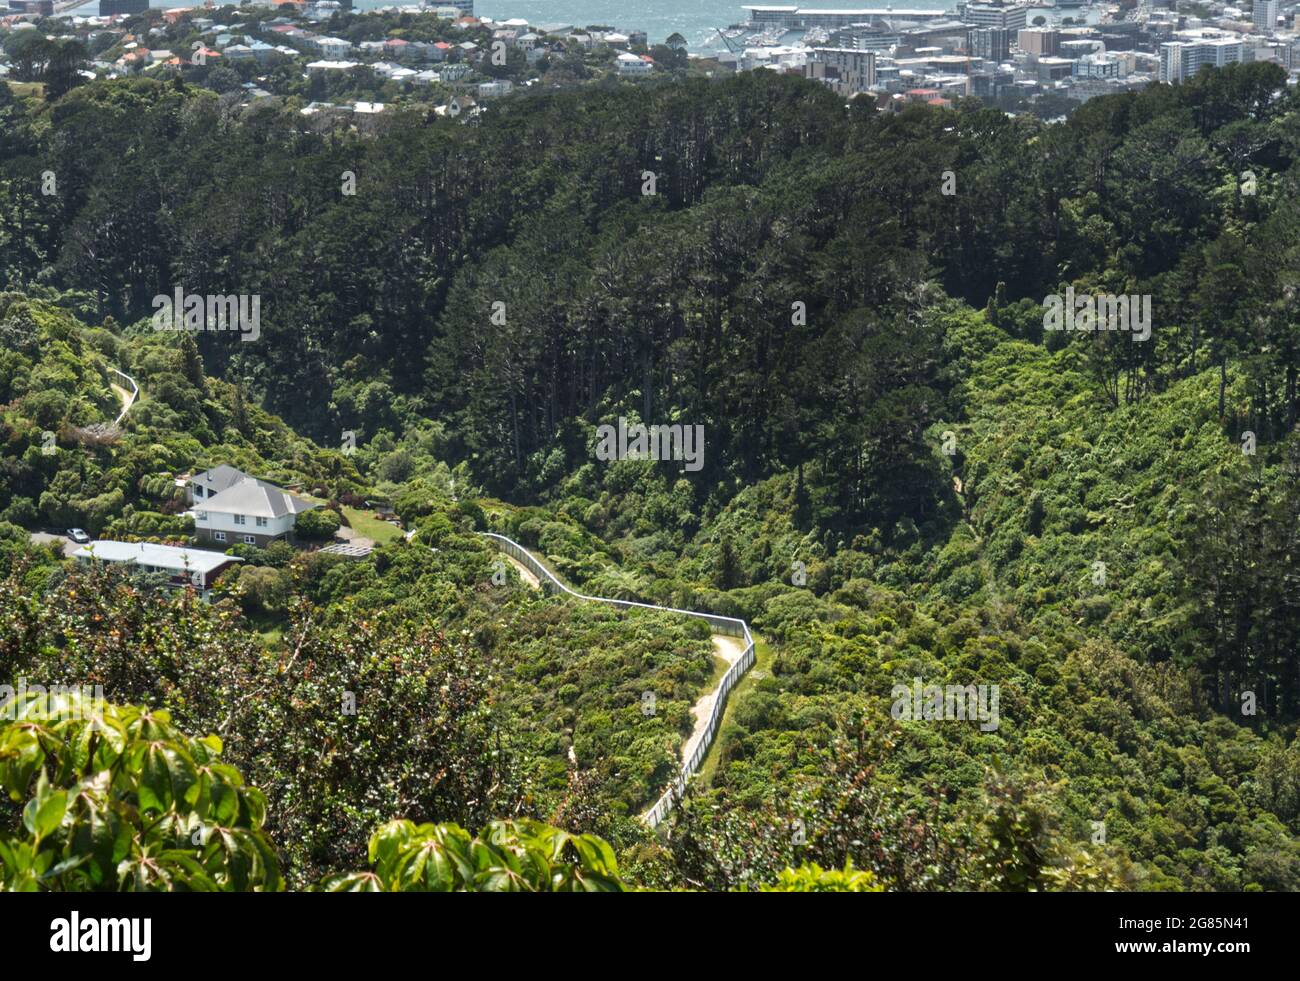 Der Raubtier Zaun in Zealandia. Der Ökosaktuar auf der rechten Seite und der Vorort Karori auf der linken Seite. Die Stadt Wellington und der Hafen liegen dahinter. Stockfoto